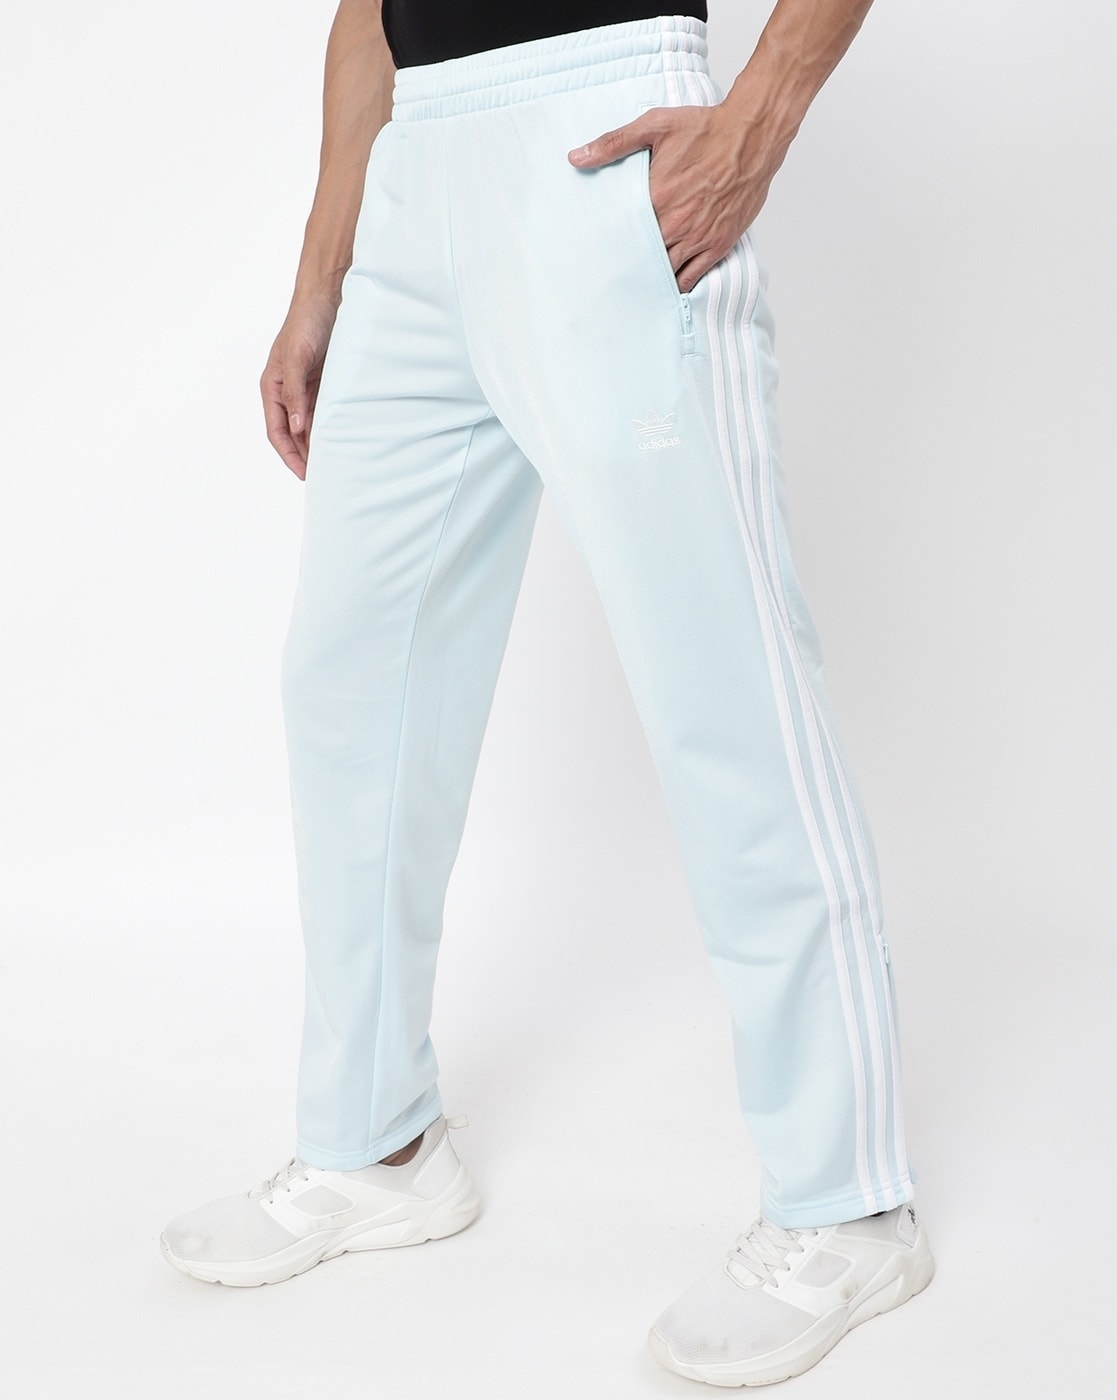 Adidas Originals Men's Classics Primeblue SST Track Pants Navy H06714  f | eBay